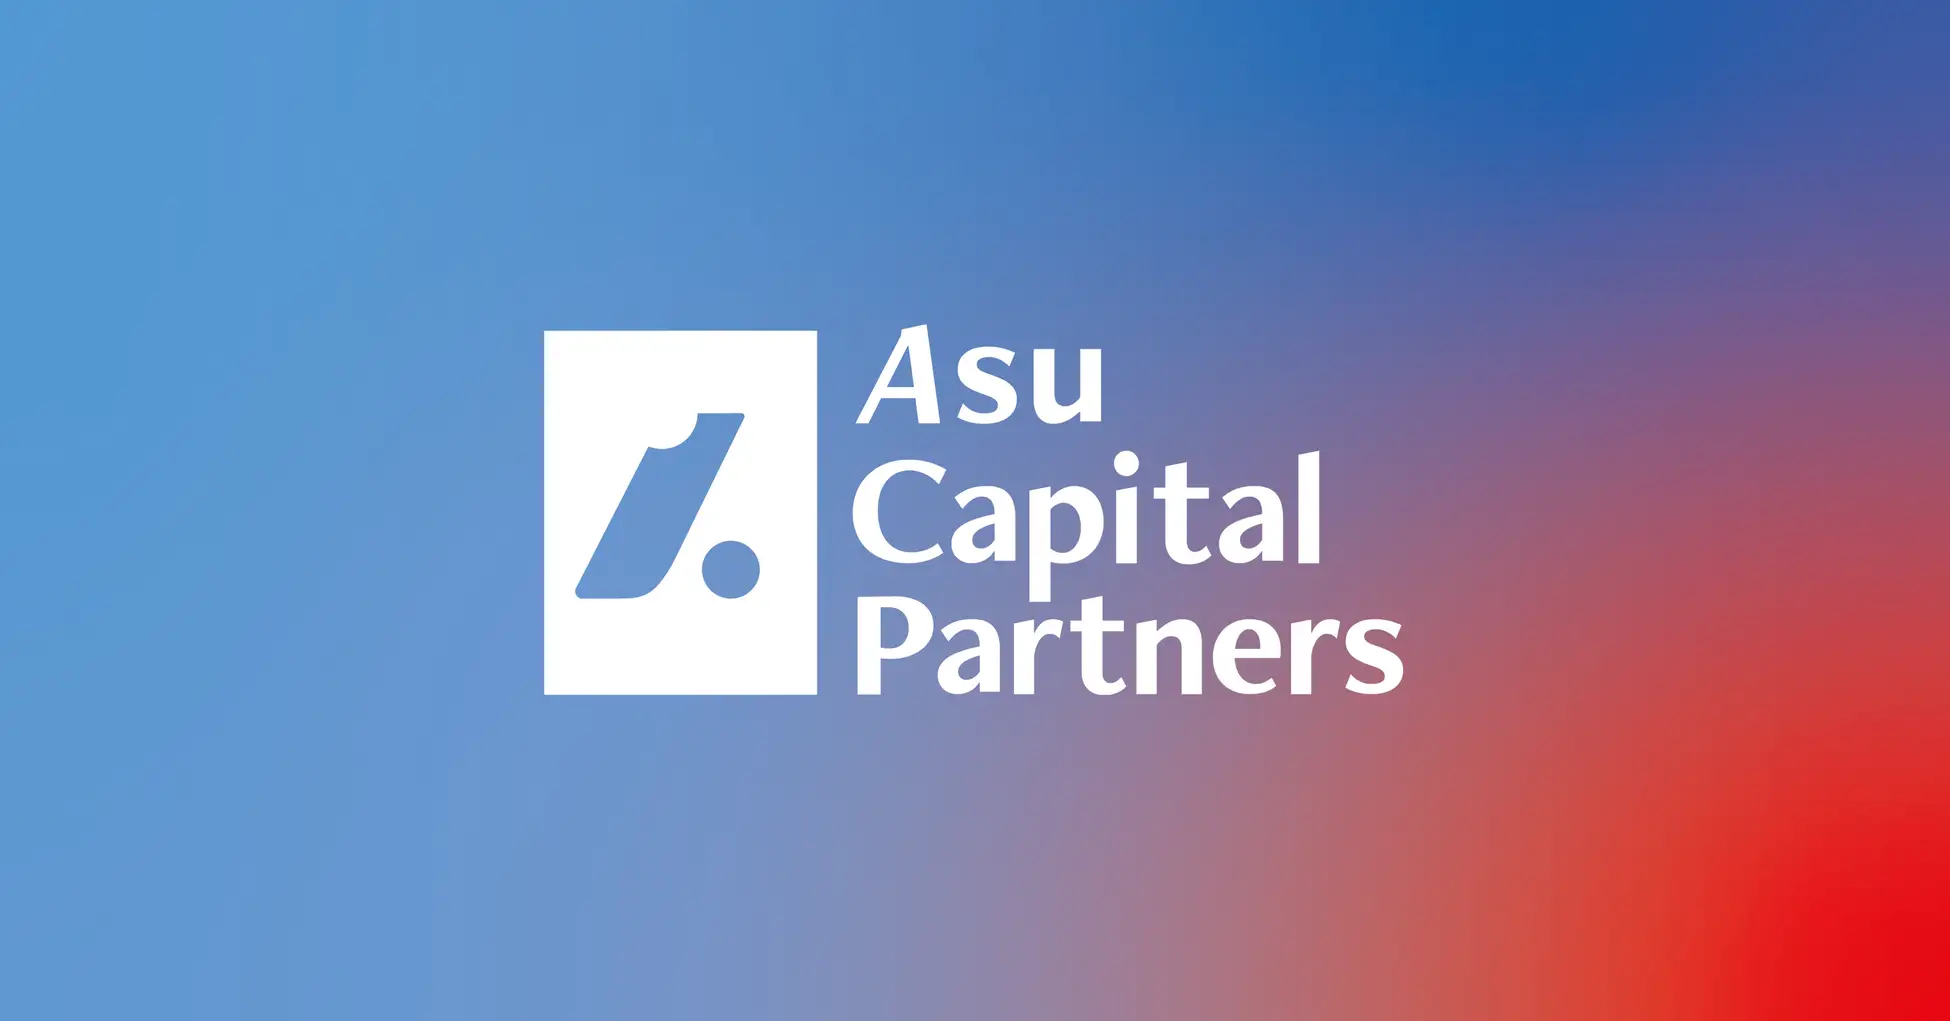 日本の産業創造に挑む”Japan to Global”ファンド「Asu Capital Partners」設立 – 執行役員 土本学氏「あらゆる産業がクロスボーダー化する中で、ACPの正鵠を射たチャレンジに期待」